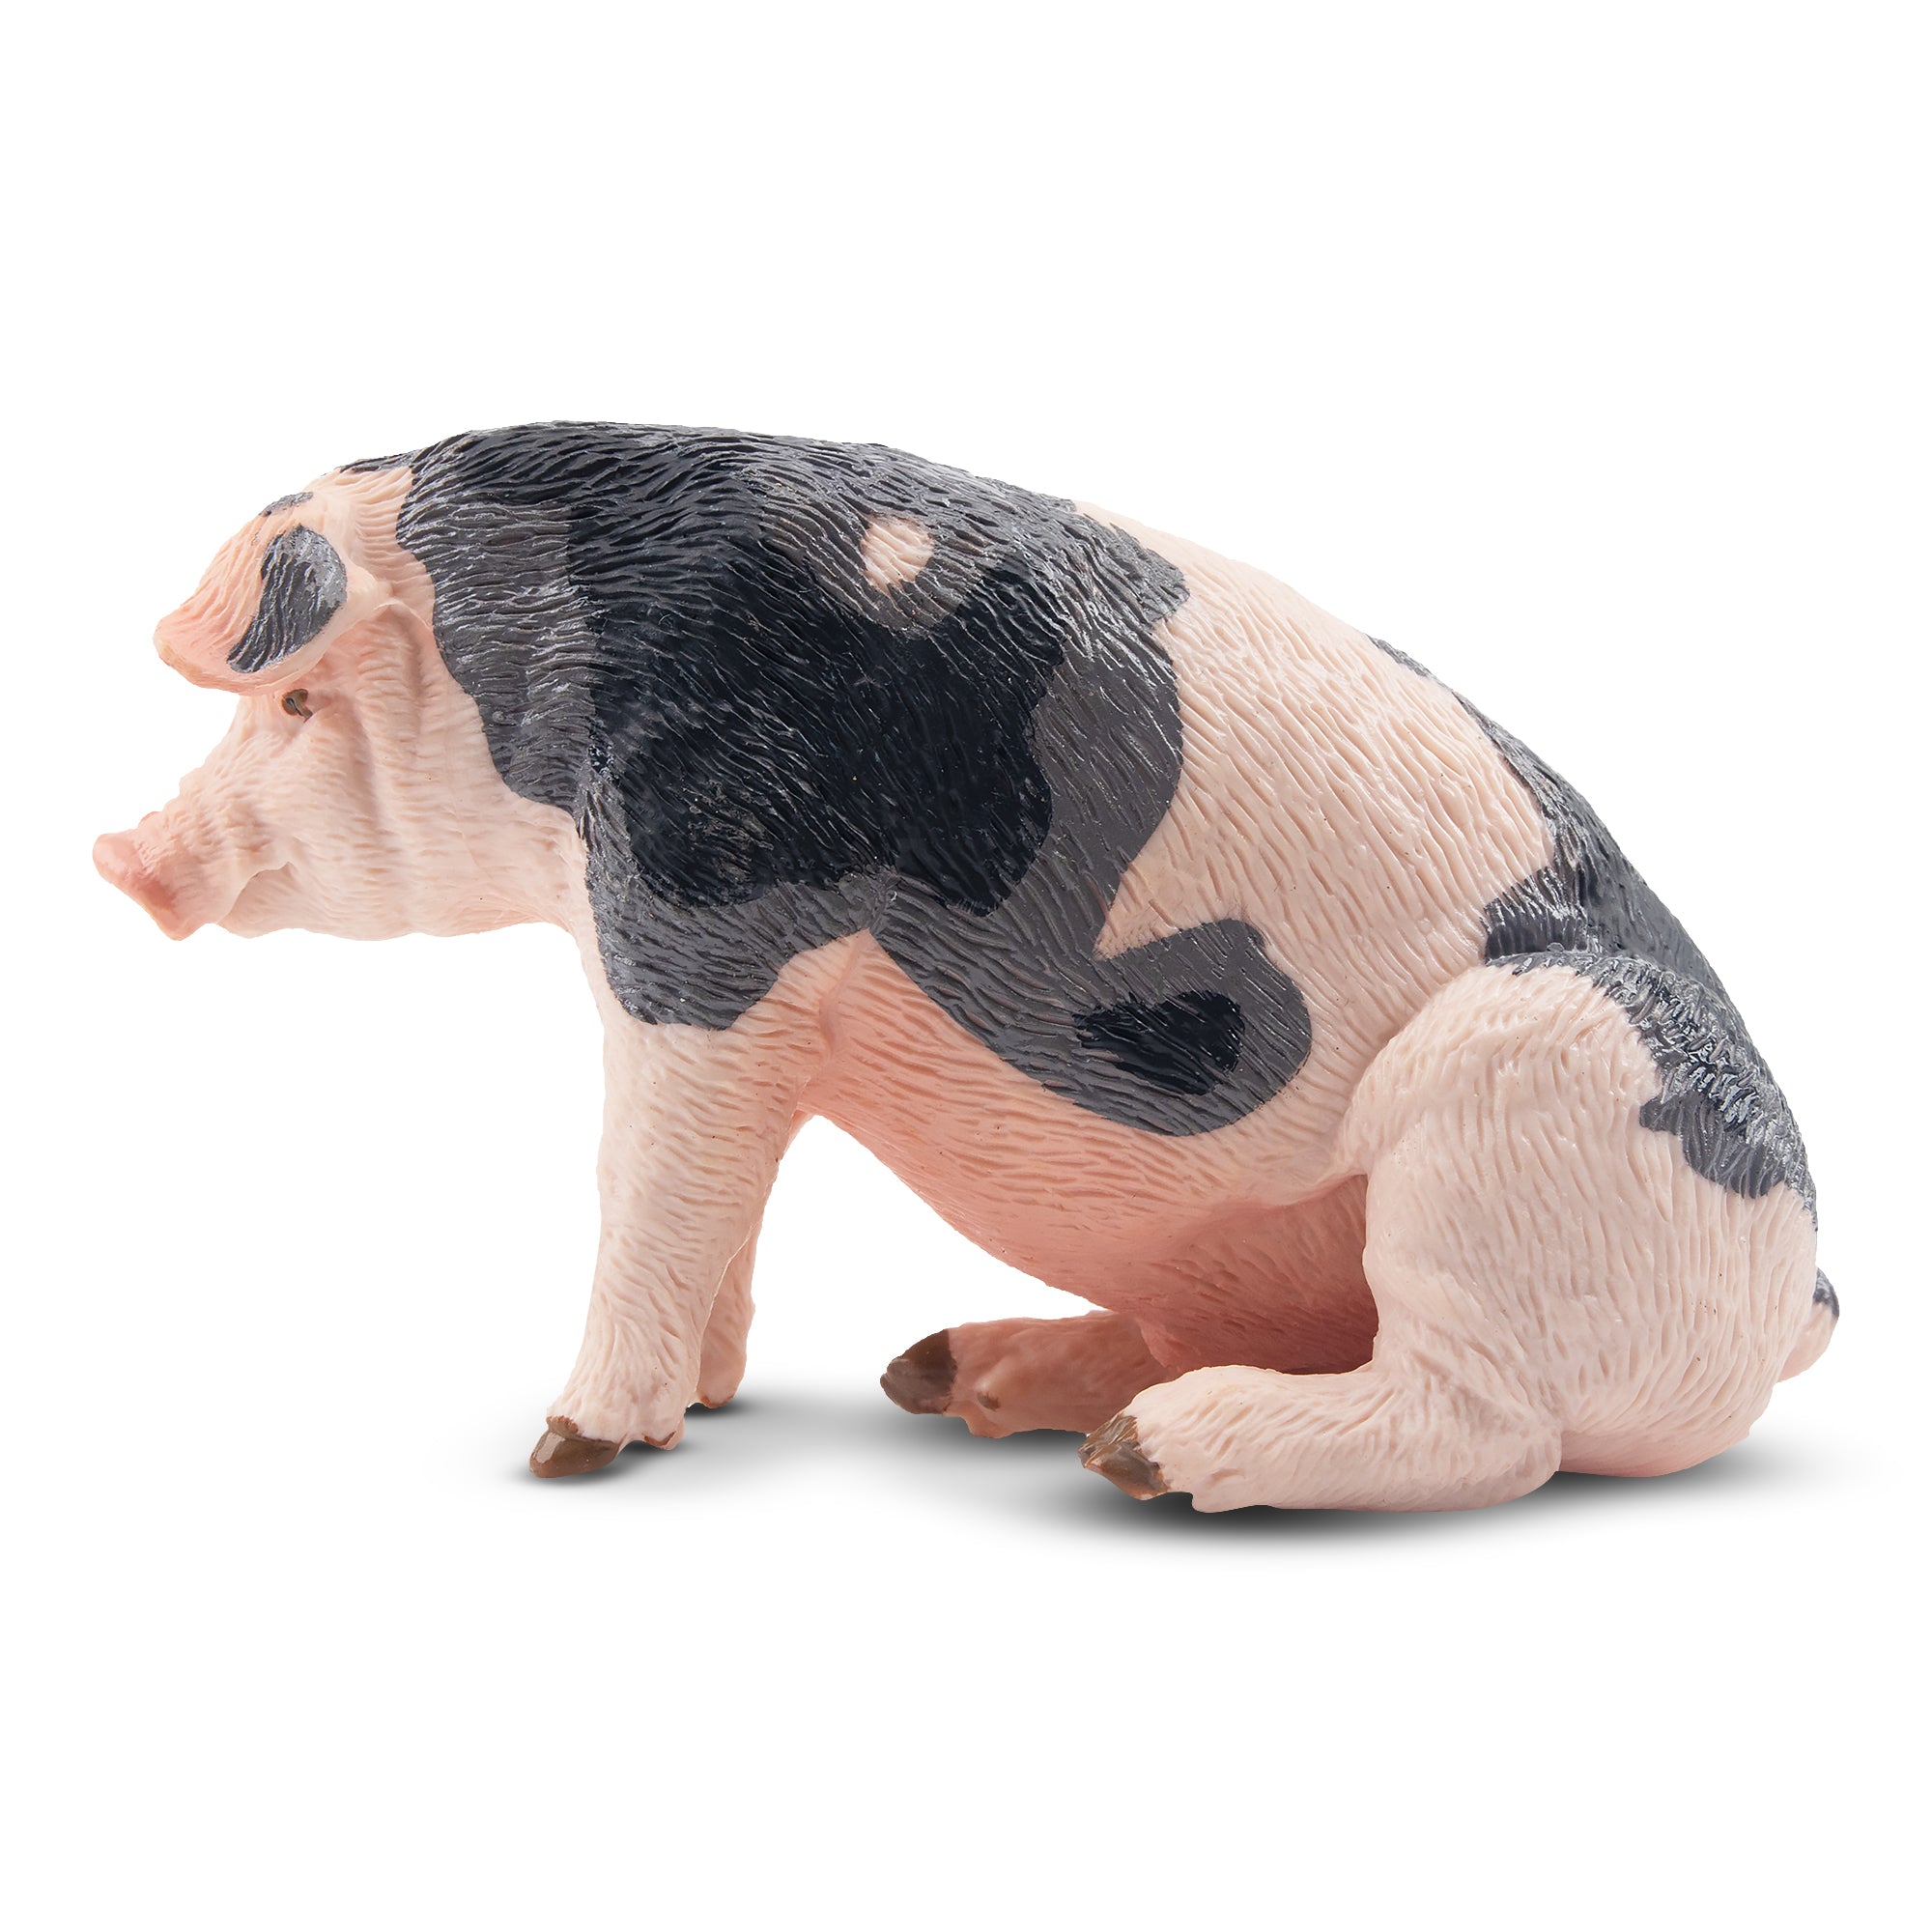 Toymany Sitting Grey Male Adult Pig Figurine Toy